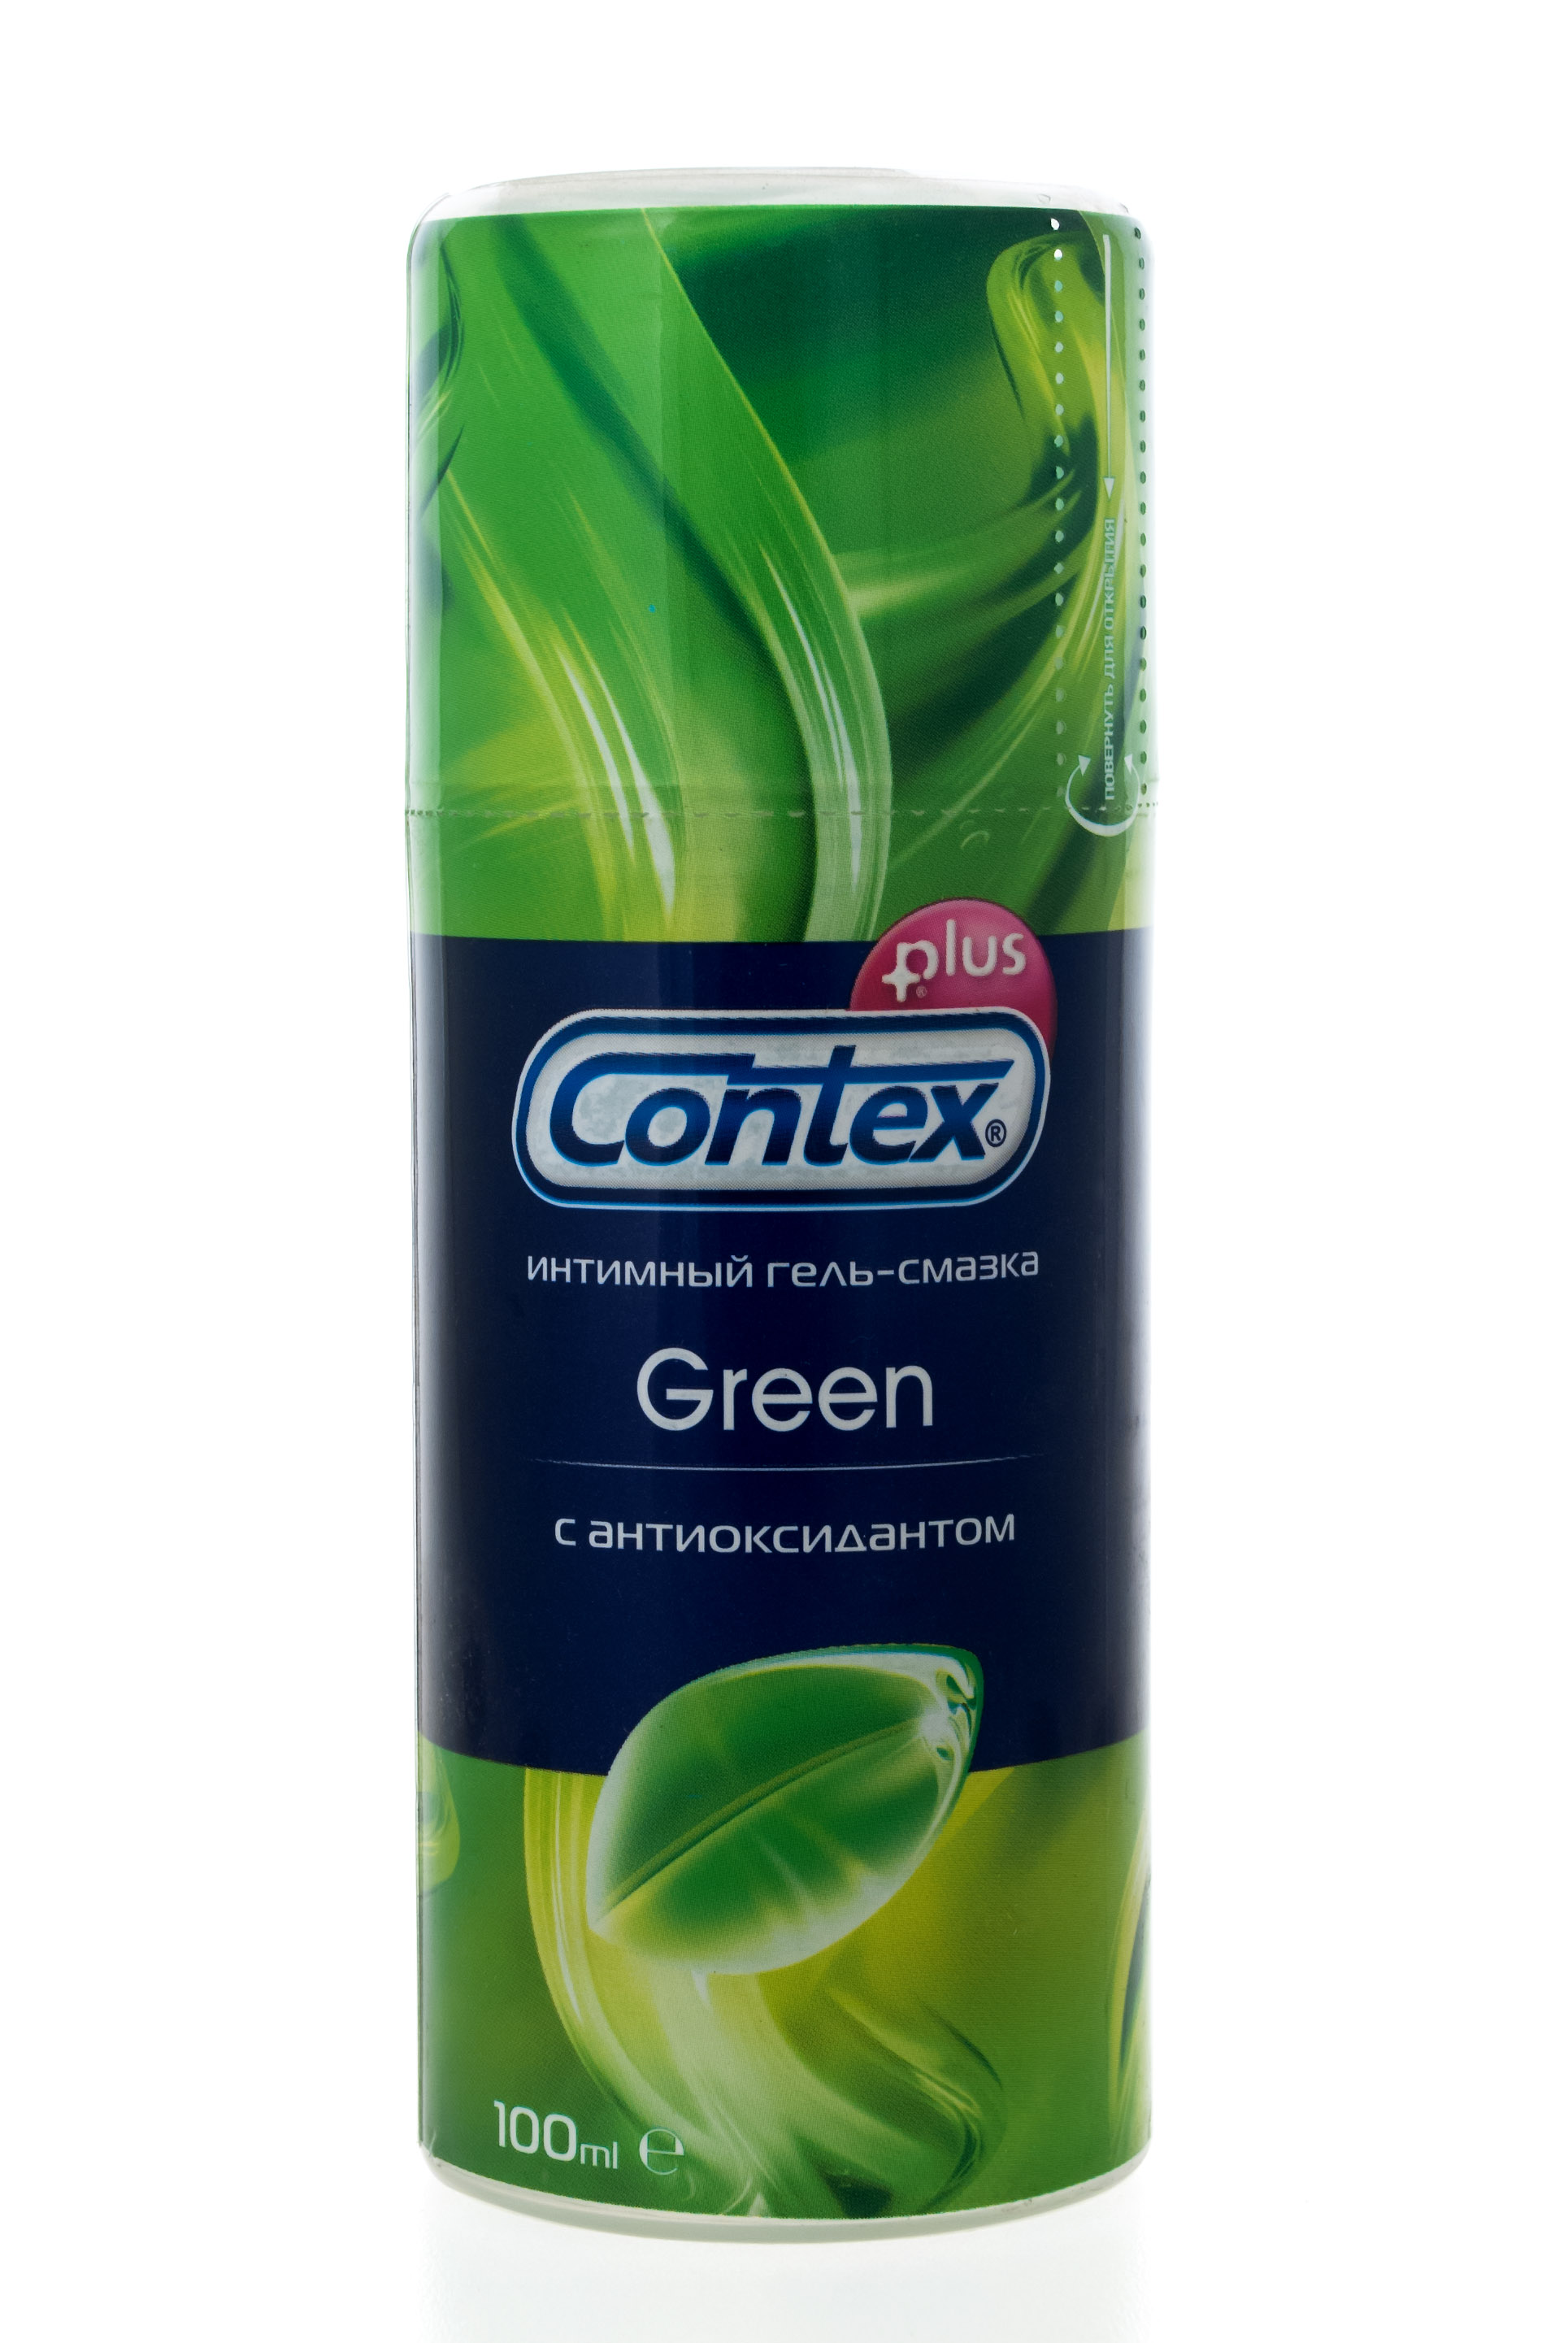 Contex Интимный гель-смазка Green, 100 мл (Contex, Гель-смазка) contex интимный гель смазка green 100 мл contex гель смазка